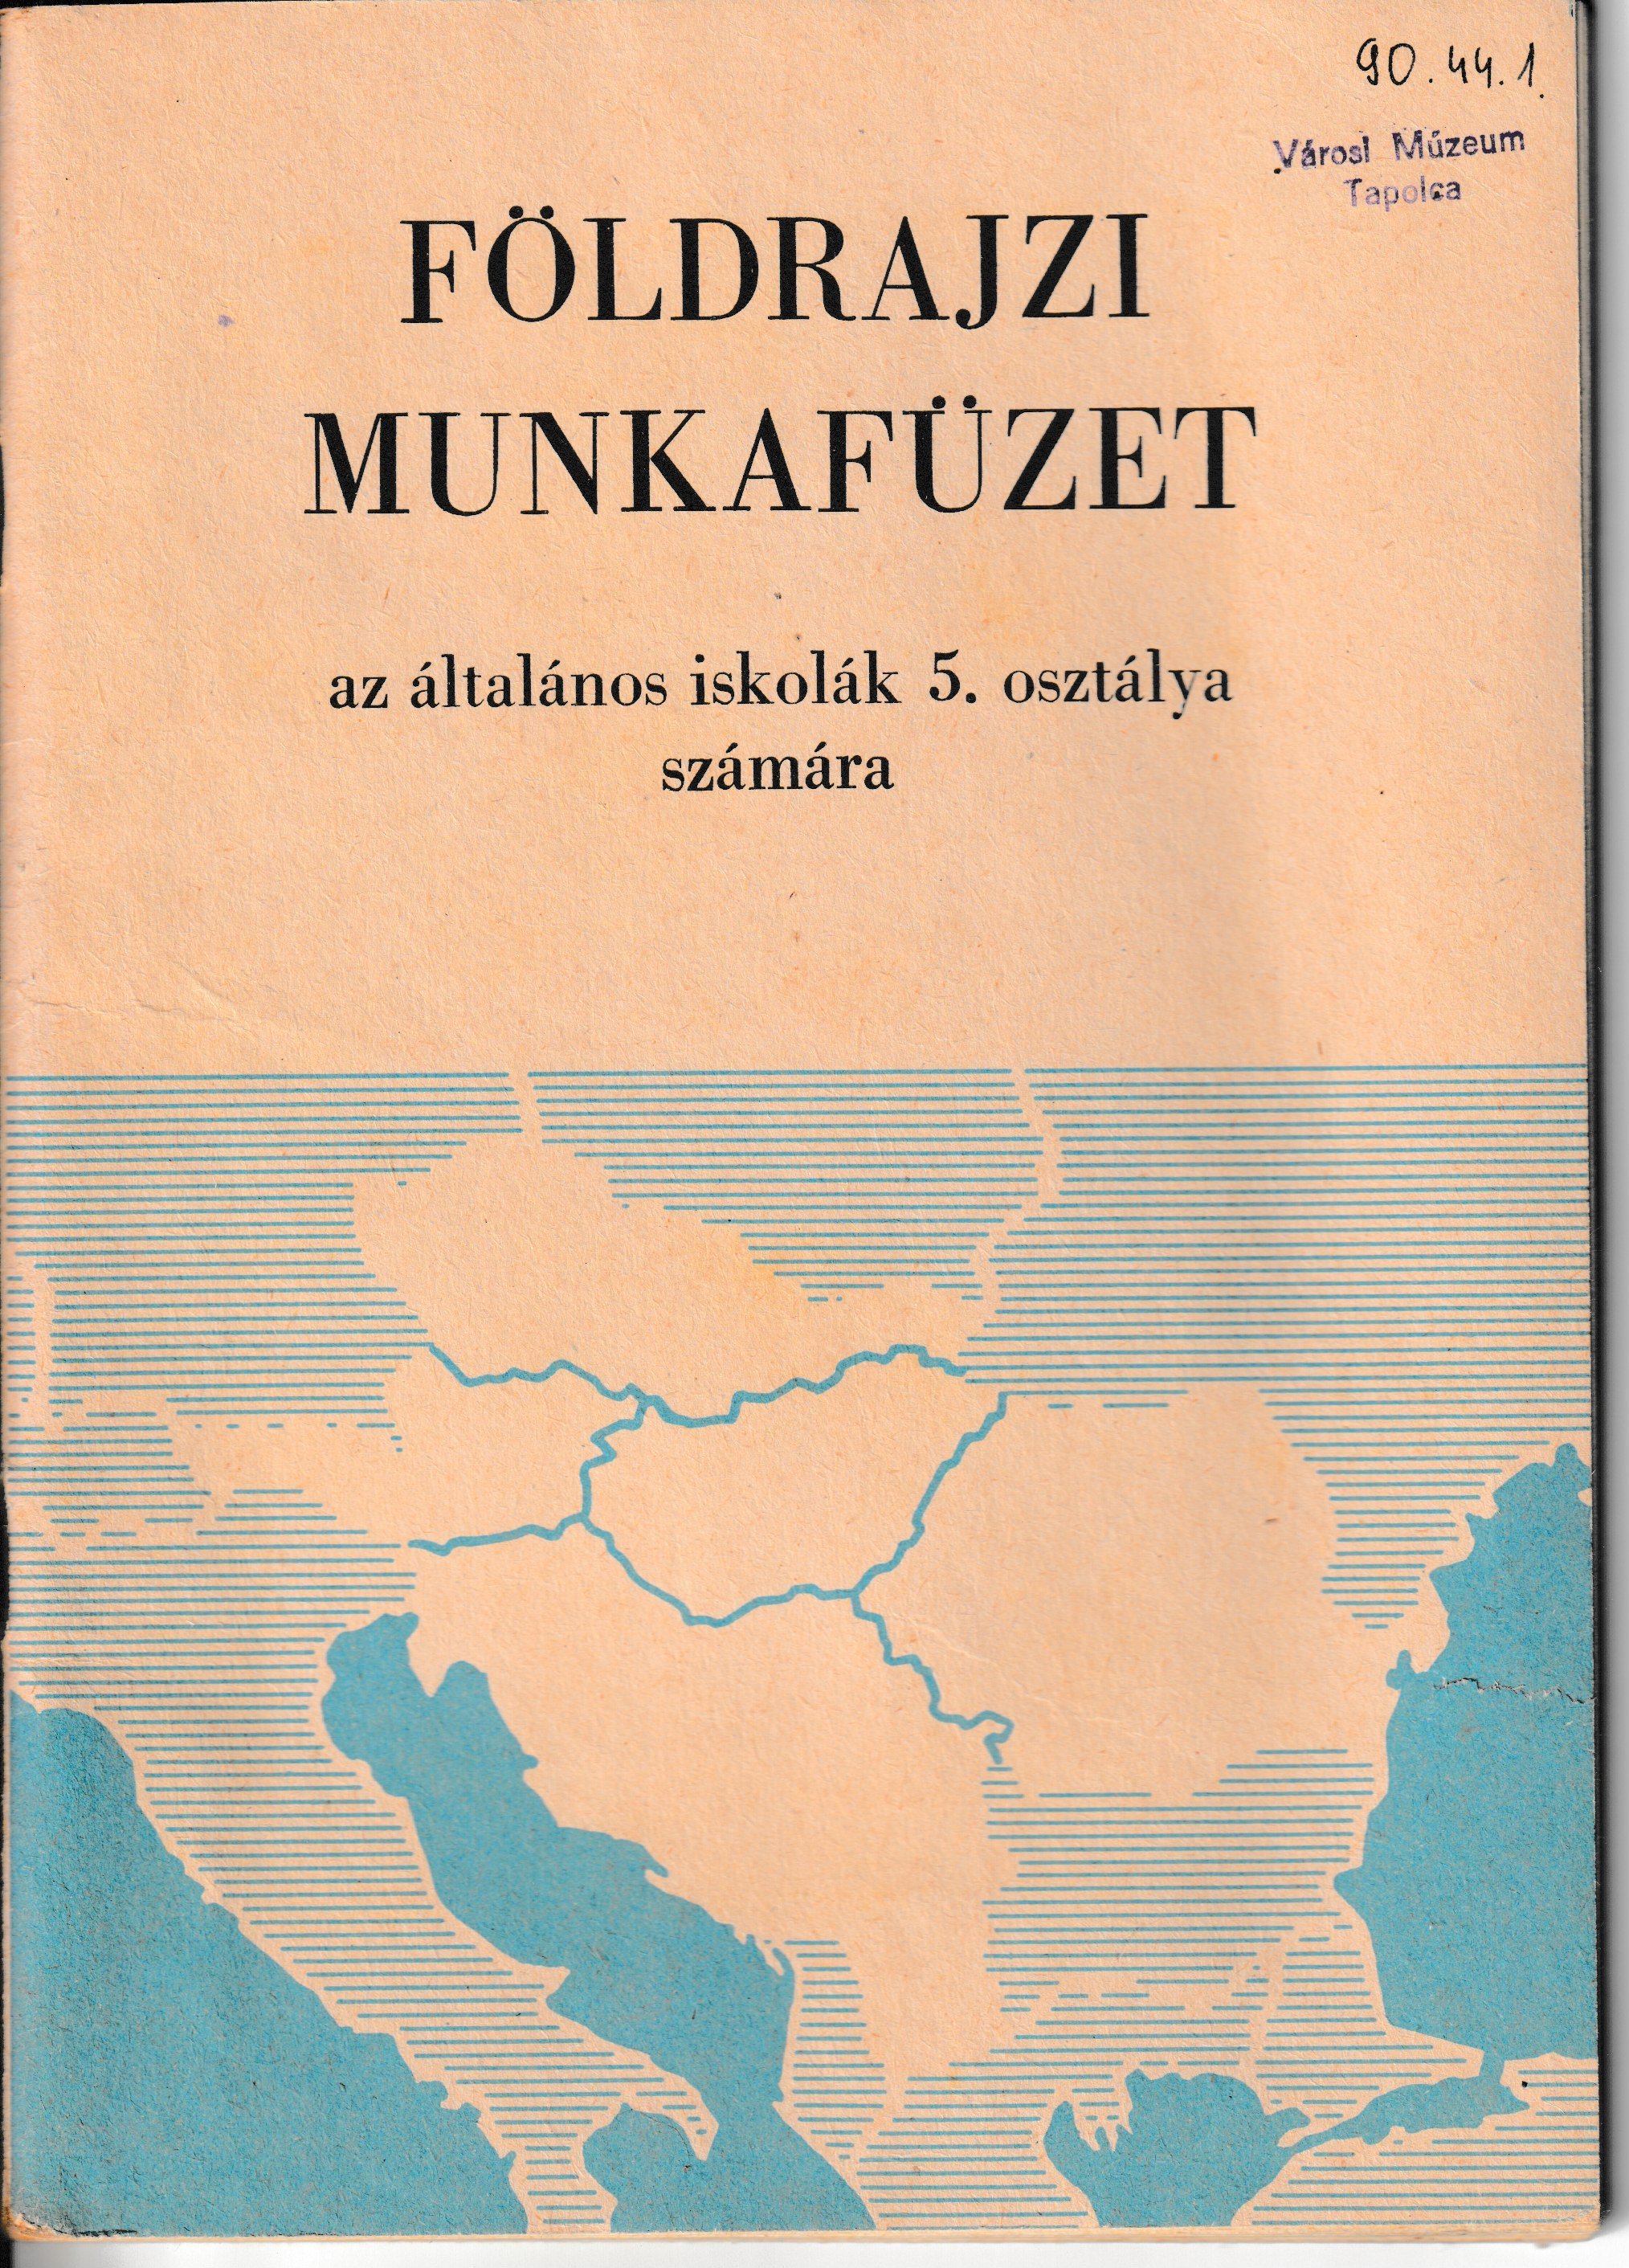 Földrajzi munkafüzet az ált. iskolák 5. osztálya számára (Tapolcai Városi Múzeum CC BY-NC-SA)